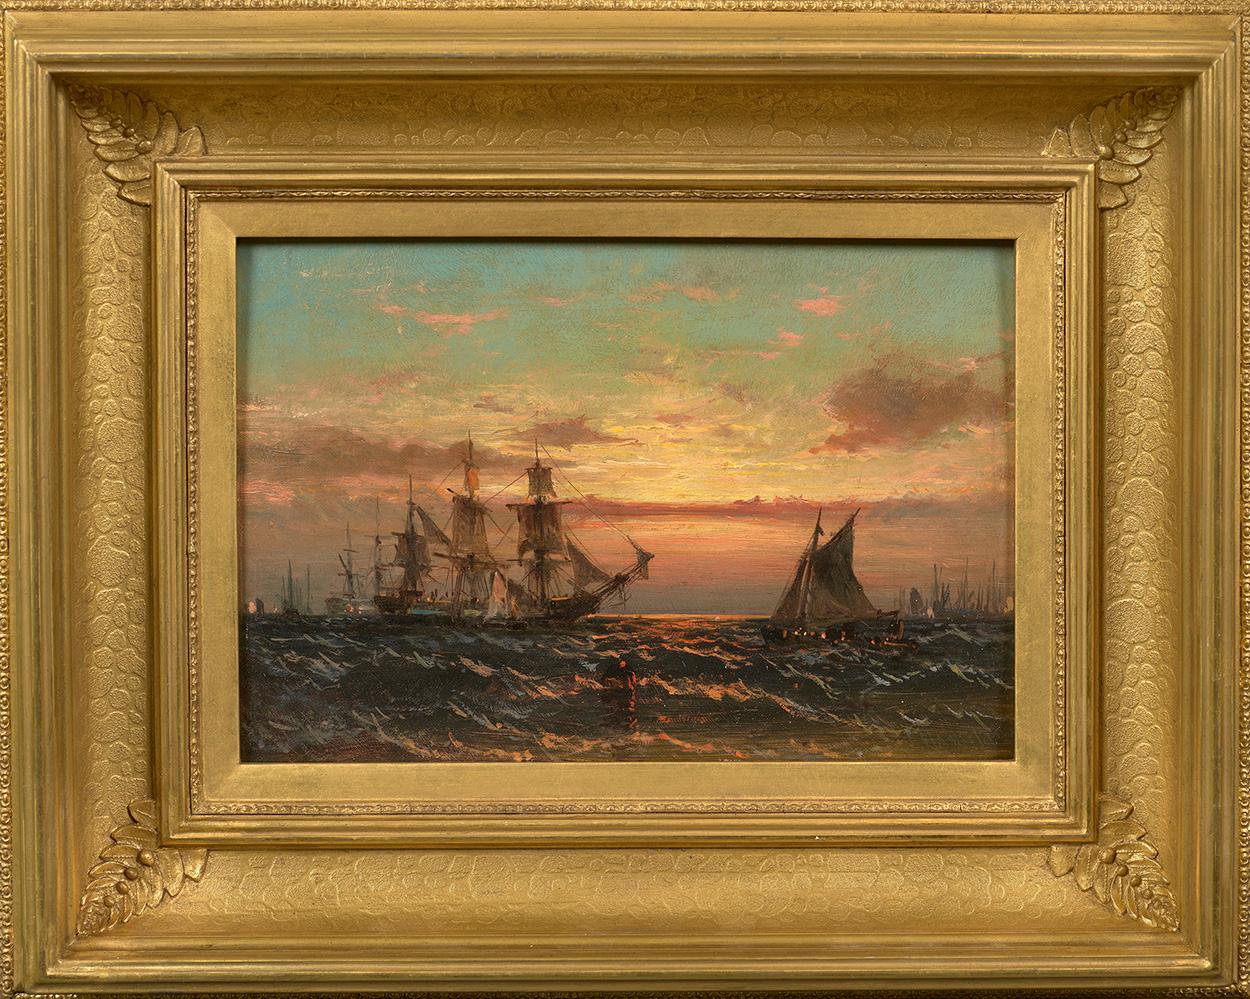 Küstensszene am Sonnenuntergang mit Schiffen  – Painting von James Hamilton